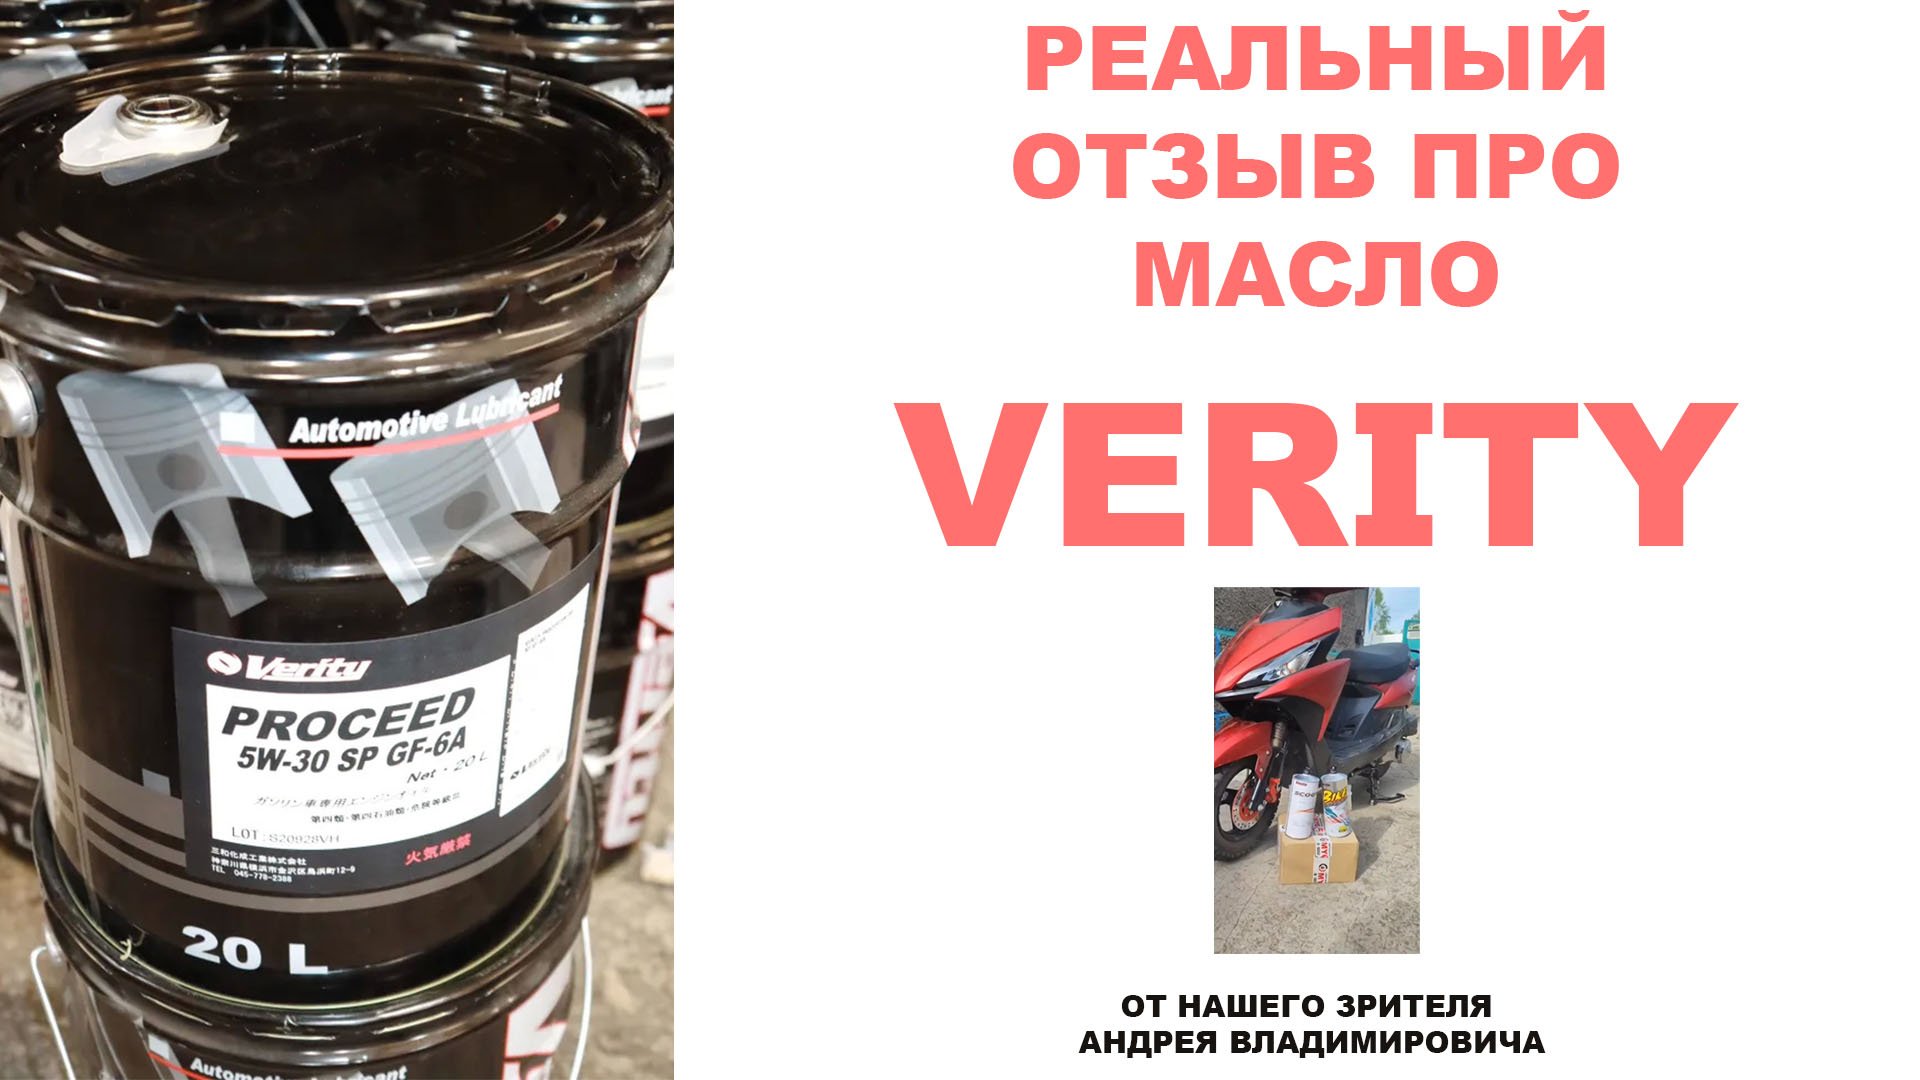 Реальный отзыв про моторное масло VERITY от нашего зрителя Андрея Владимировича